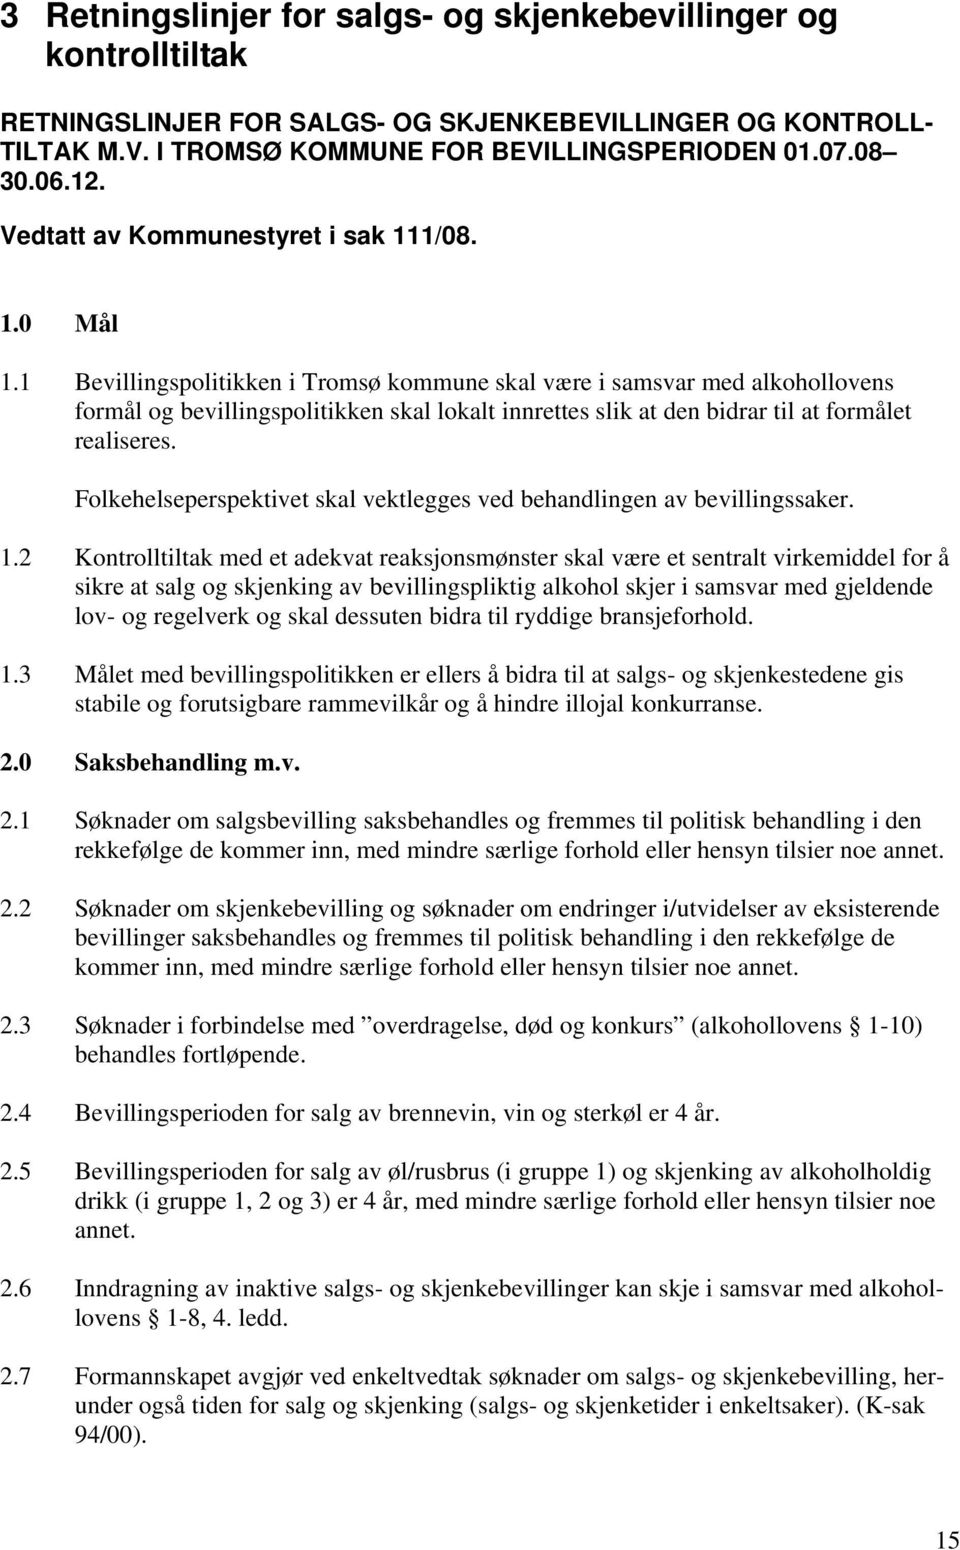 1 Bevillingspolitikken i Tromsø kommune skal være i samsvar med alkohollovens formål og bevillingspolitikken skal lokalt innrettes slik at den bidrar til at formålet realiseres.